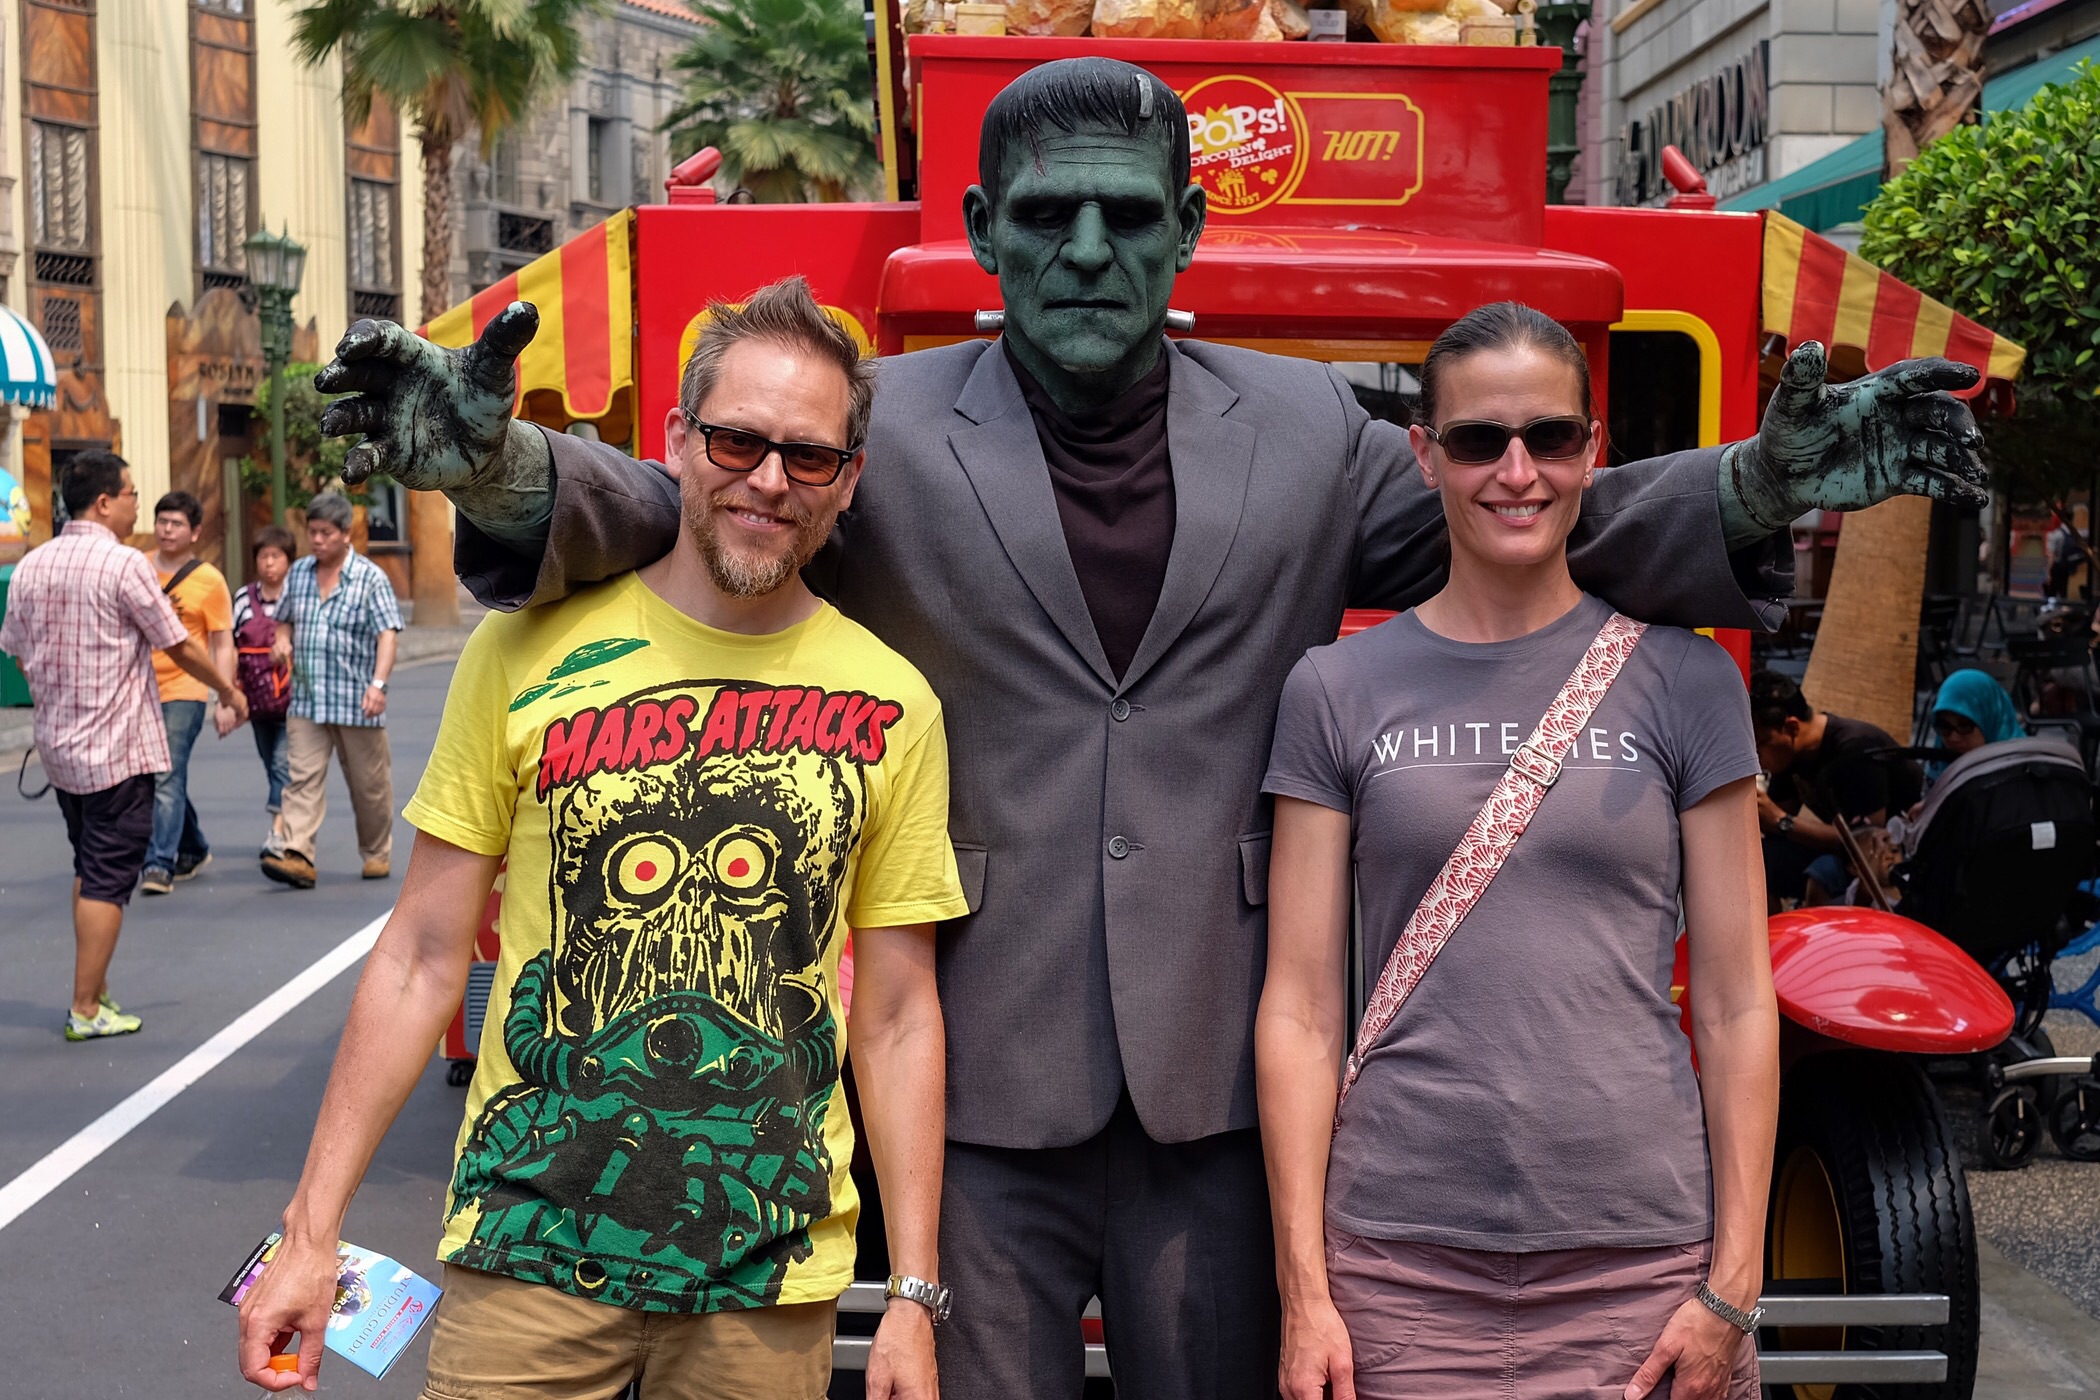 We met one last friend before we left — Universal Studios Singapore